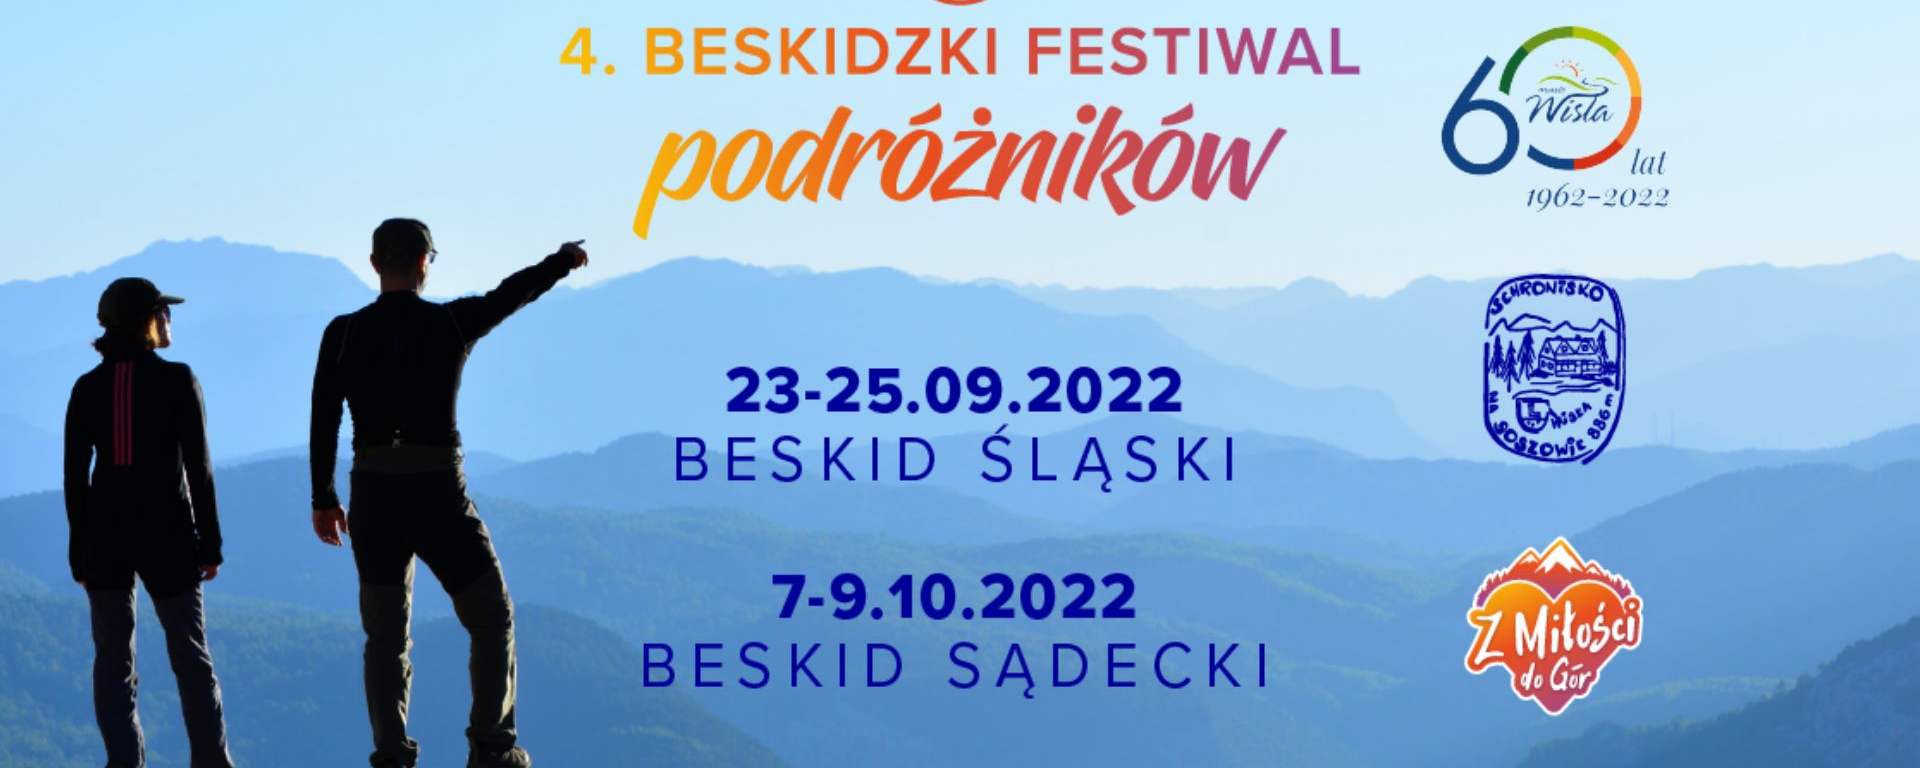 Beskidzki Festiwal Podróżników 2022